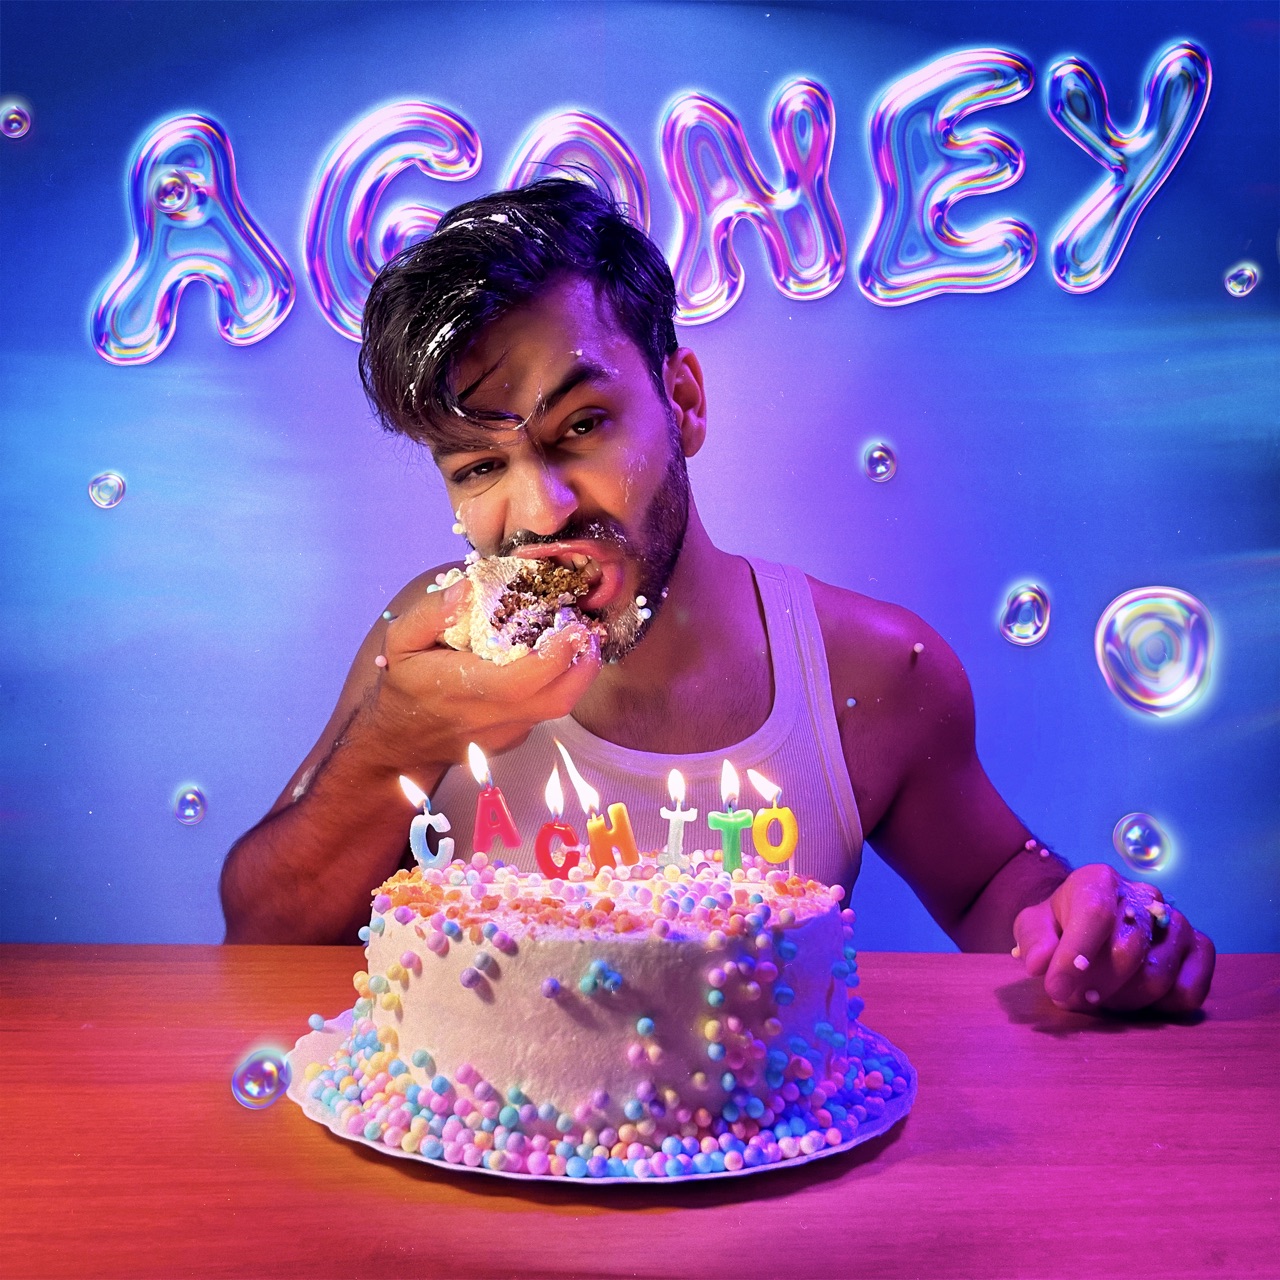 Agoney — Cachito cover artwork